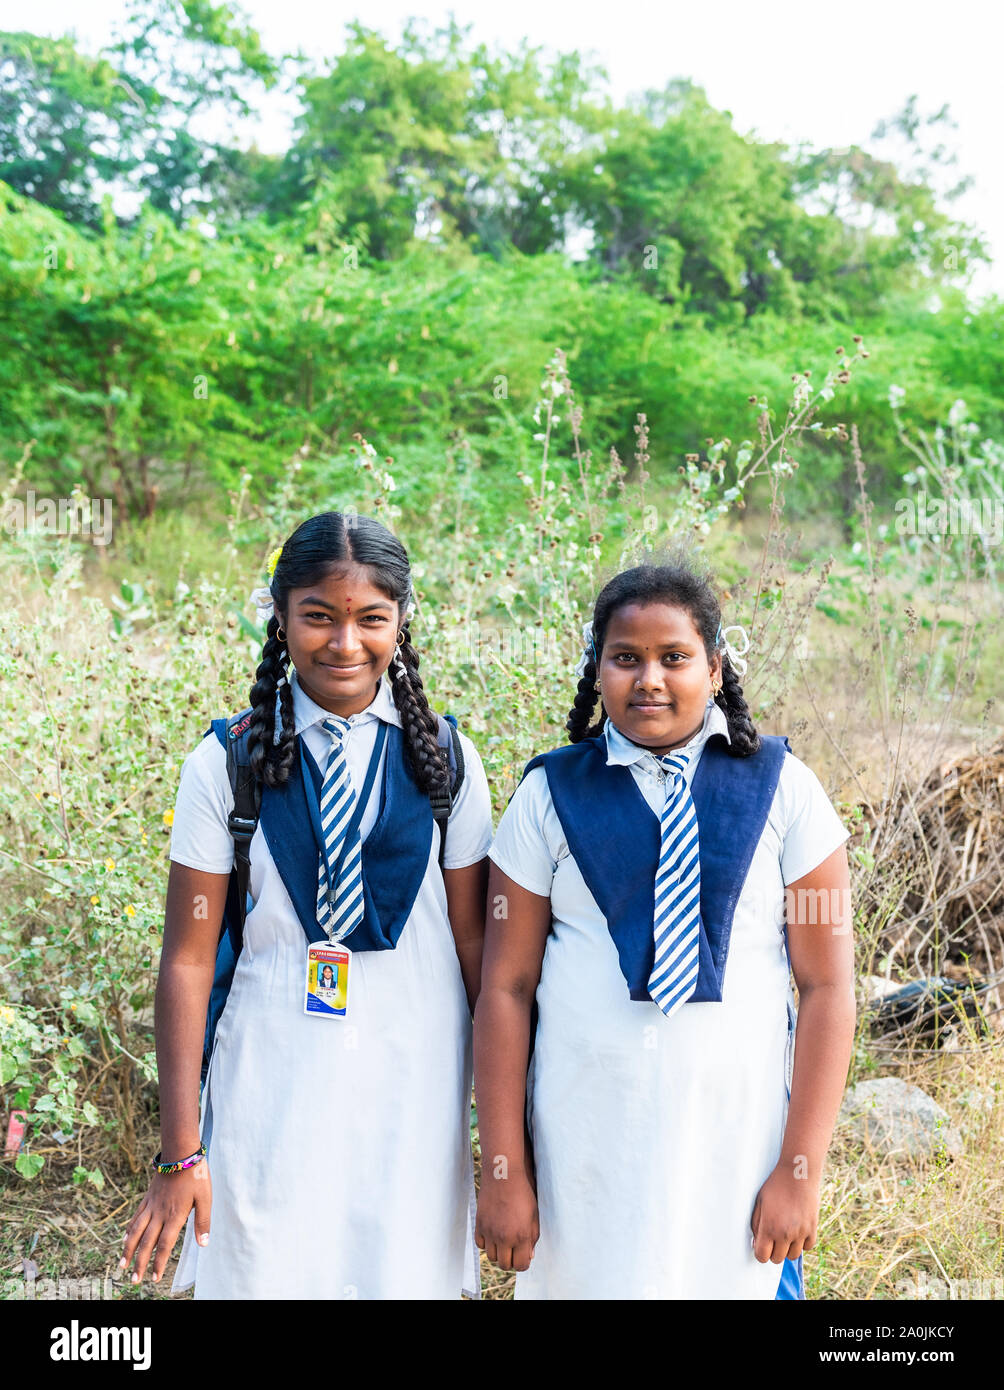 PUTTAPARTHI, INDIA - Noviembre 29, 2018: Dos niñas indias en uniforme escolar. Vertical. Con el enfoque selectivo Foto de stock